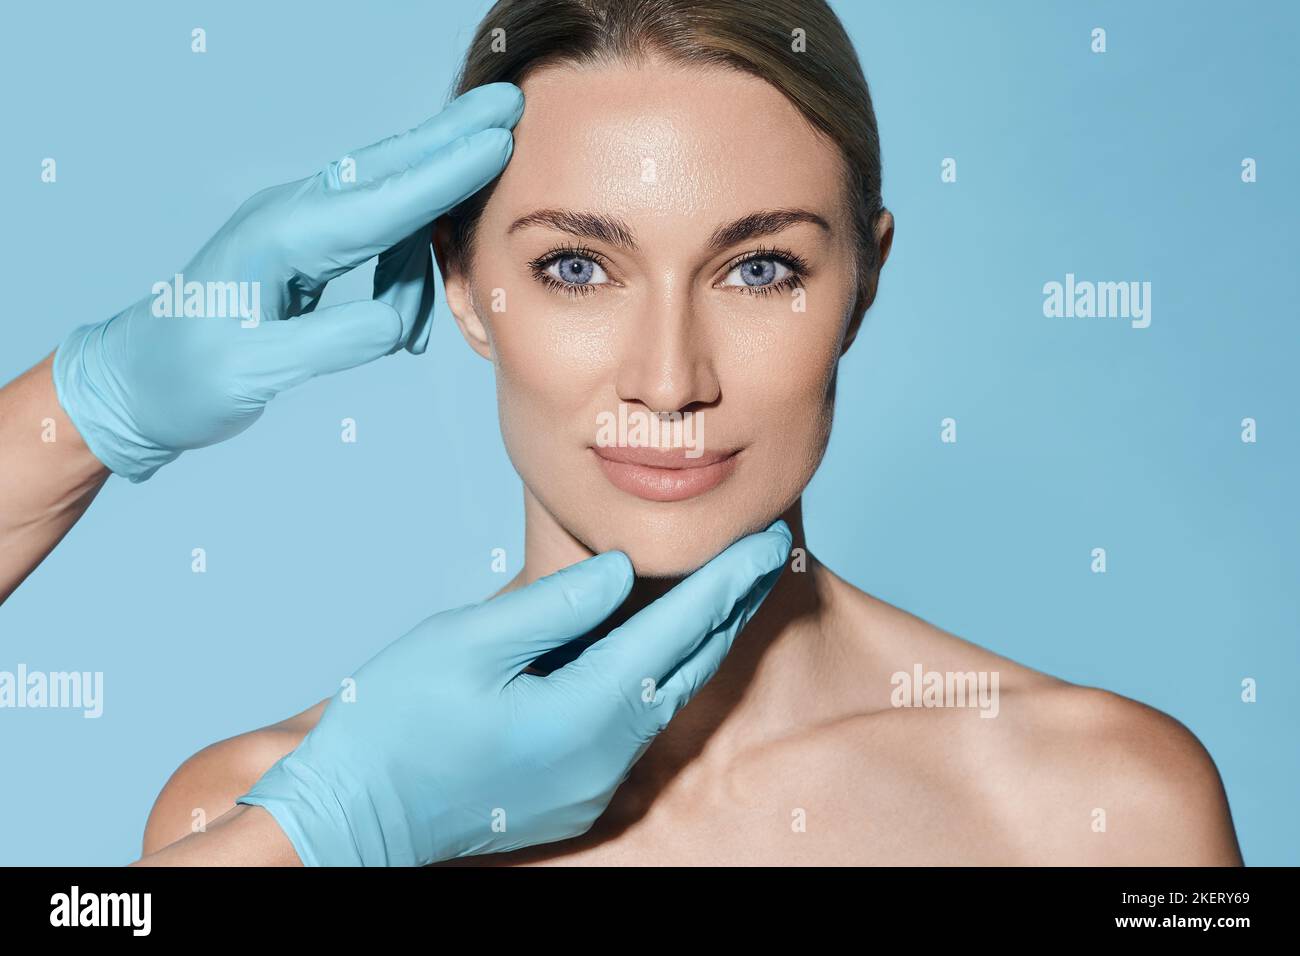 Forme idéale de visage de femme pour chirurgien plastique, référence visage de femme sur fond bleu. Chirurgie plastique, concept Banque D'Images